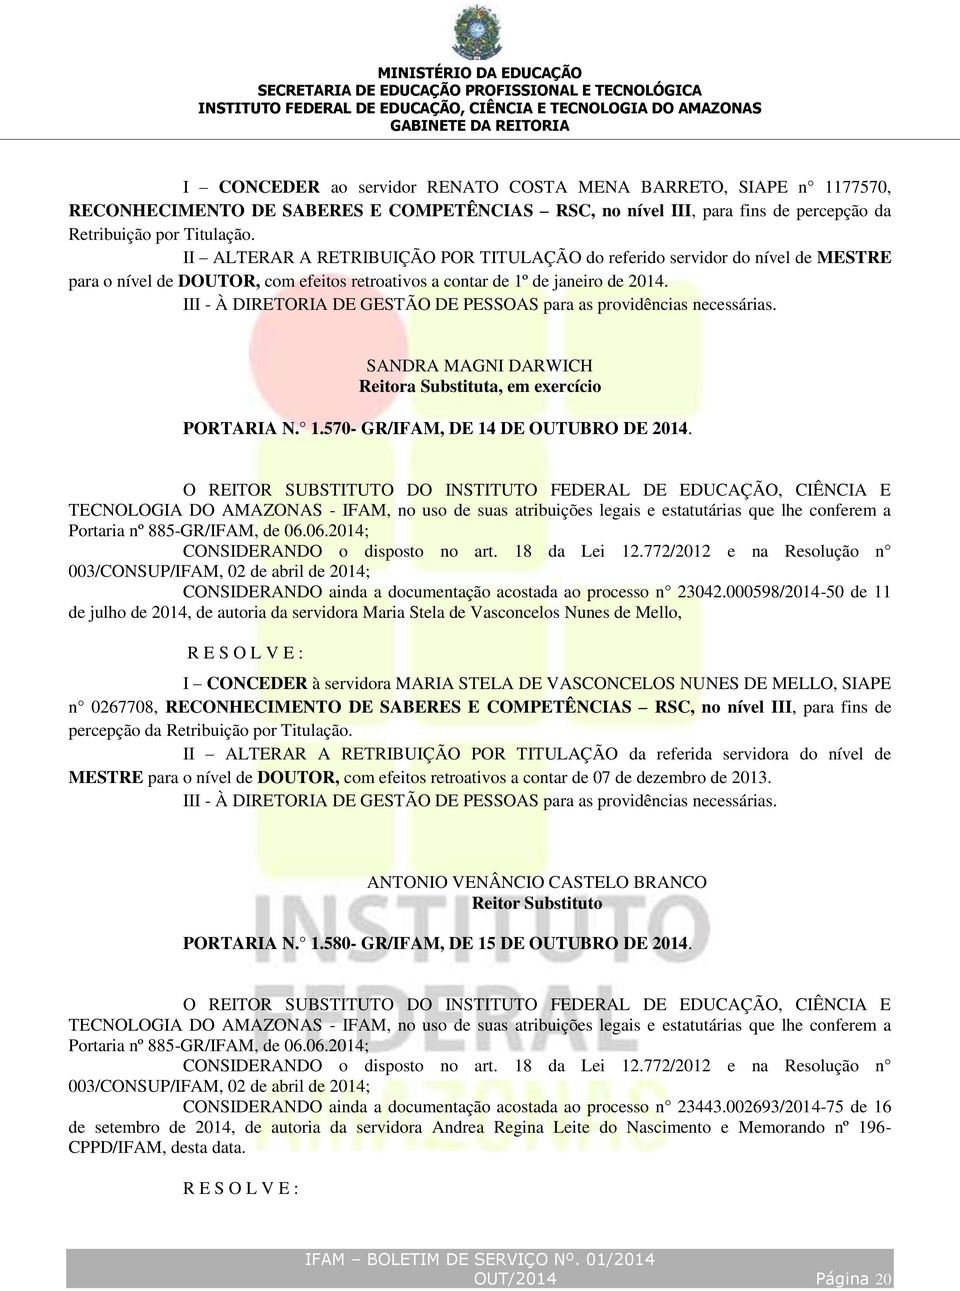 III - À DIRETORIA DE GESTÃO DE PESSOAS para as providências necessárias. SANDRA MAGNI DARWICH PORTARIA N. 1.570- GR/IFAM, DE 14 DE OUTUBRO DE 2014.